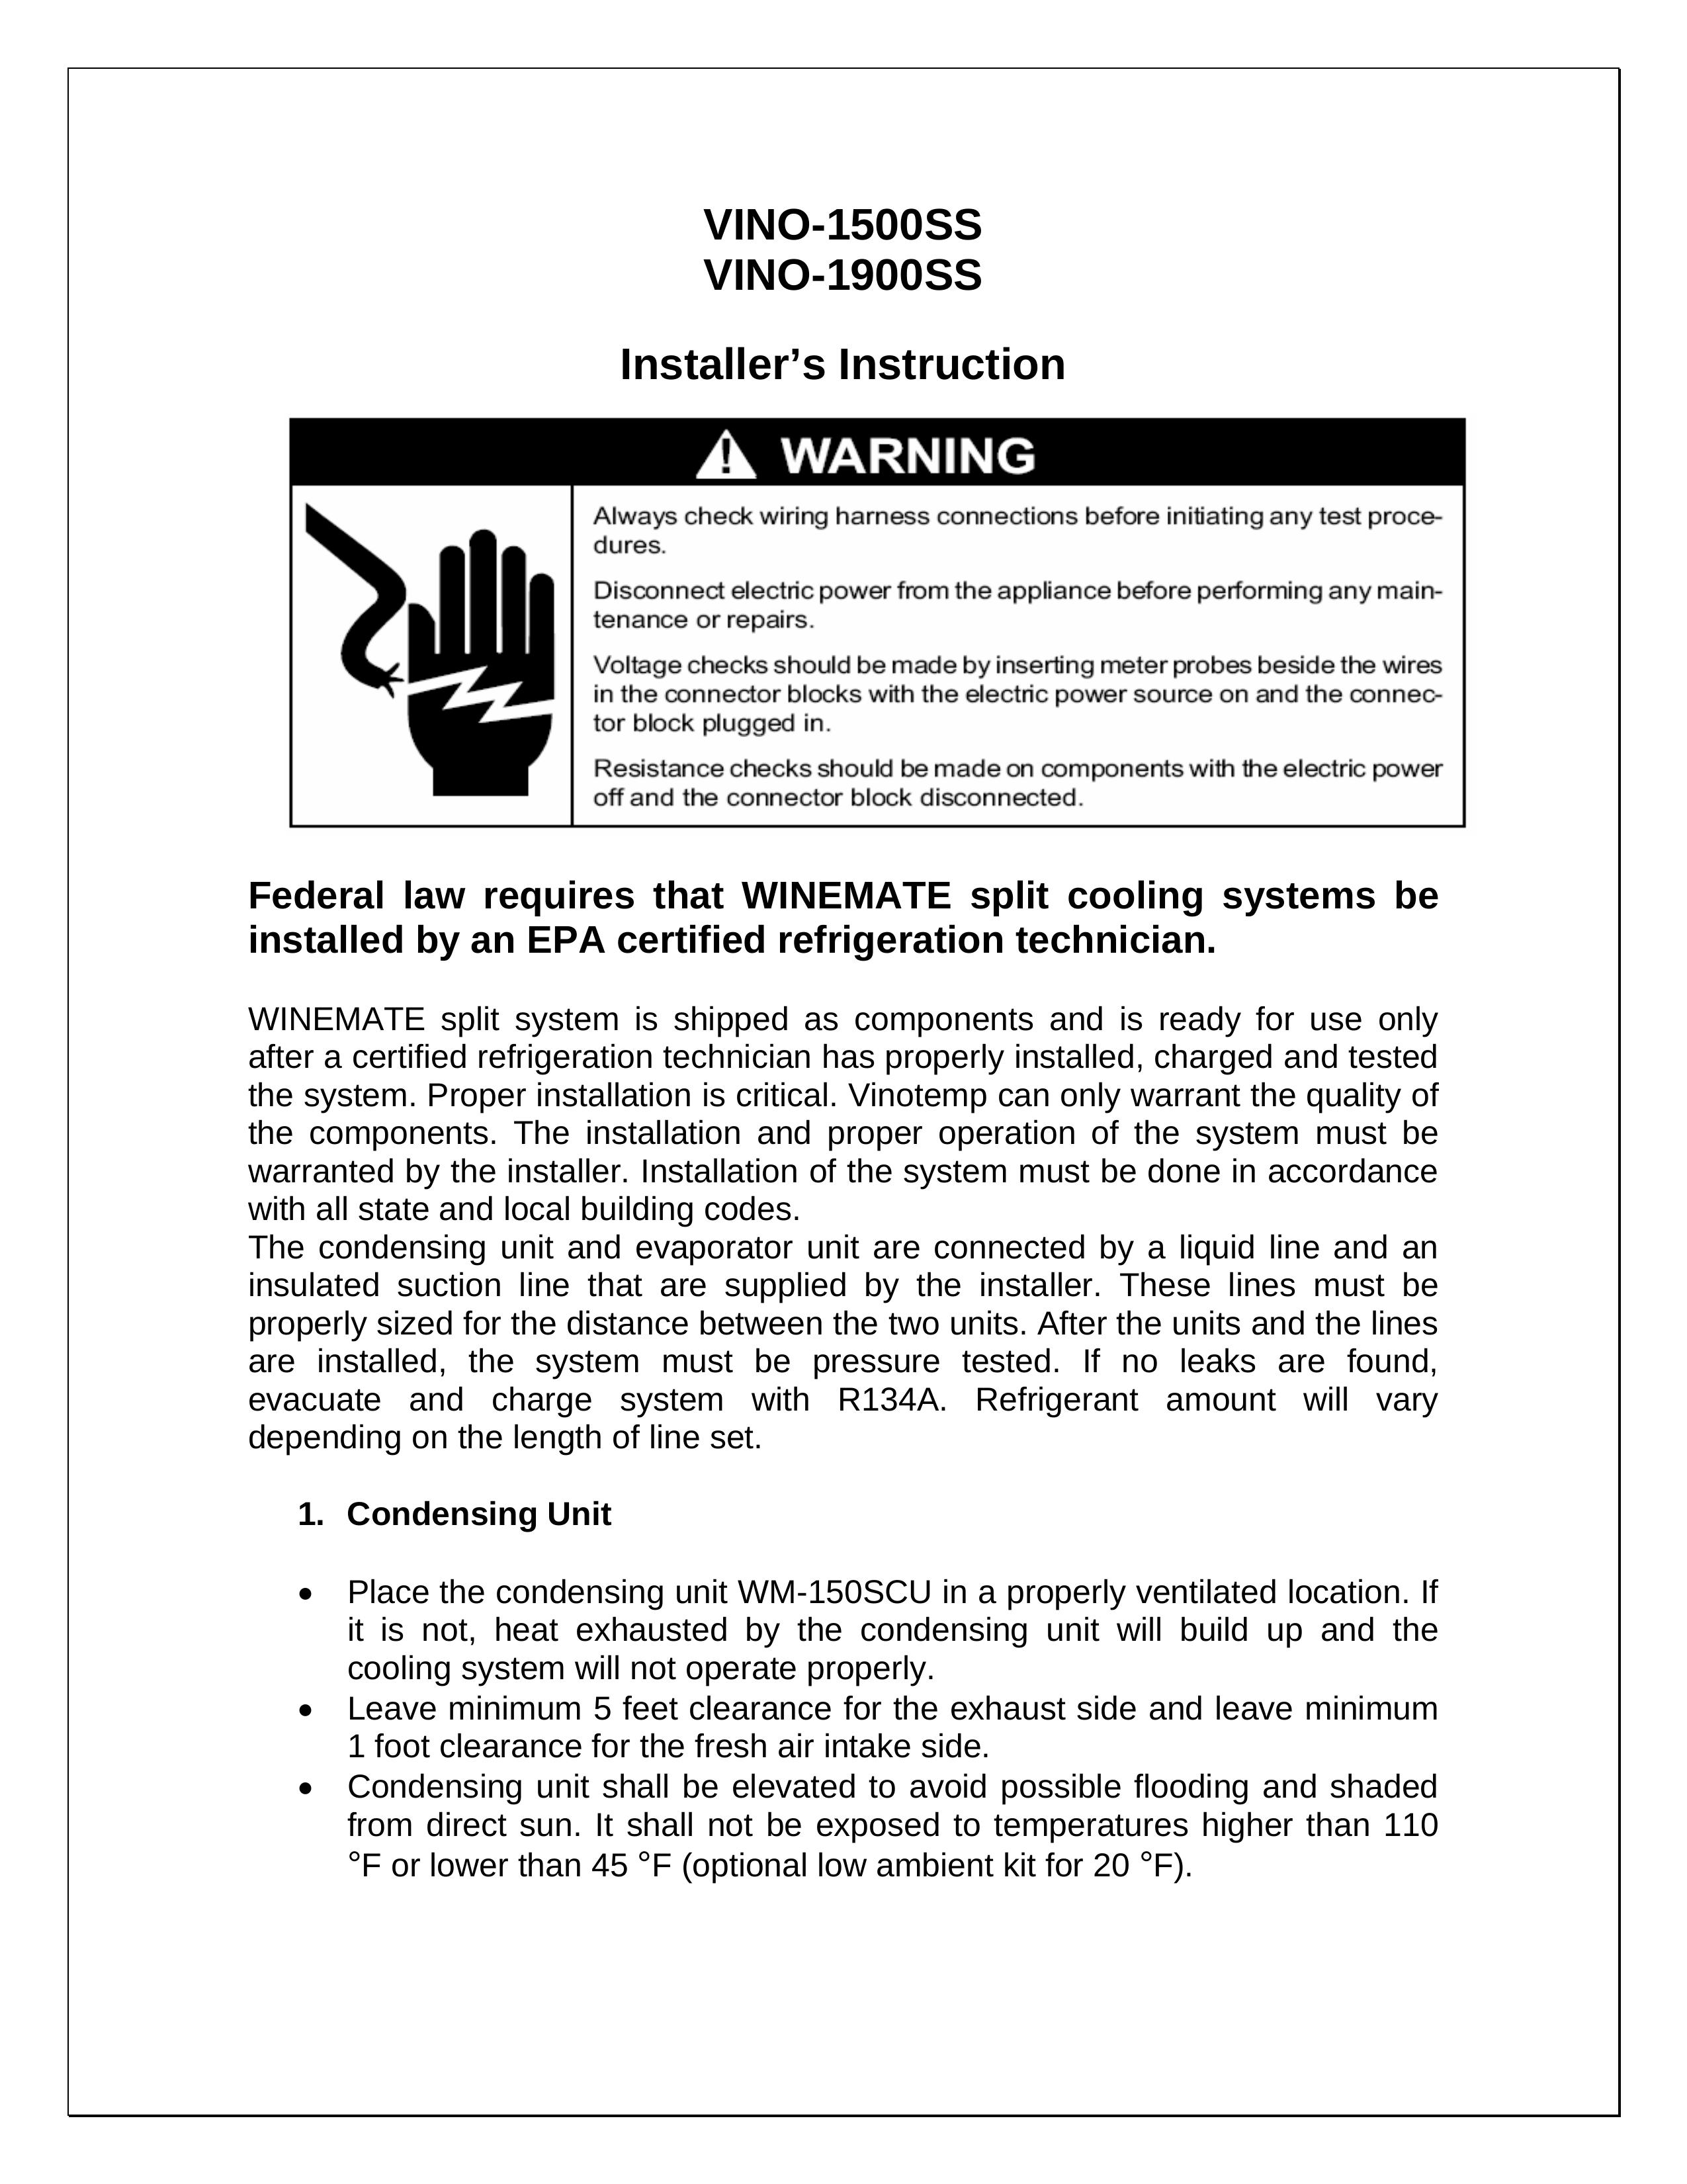 Vinotemp VINO-1500SS Refrigerator User Manual